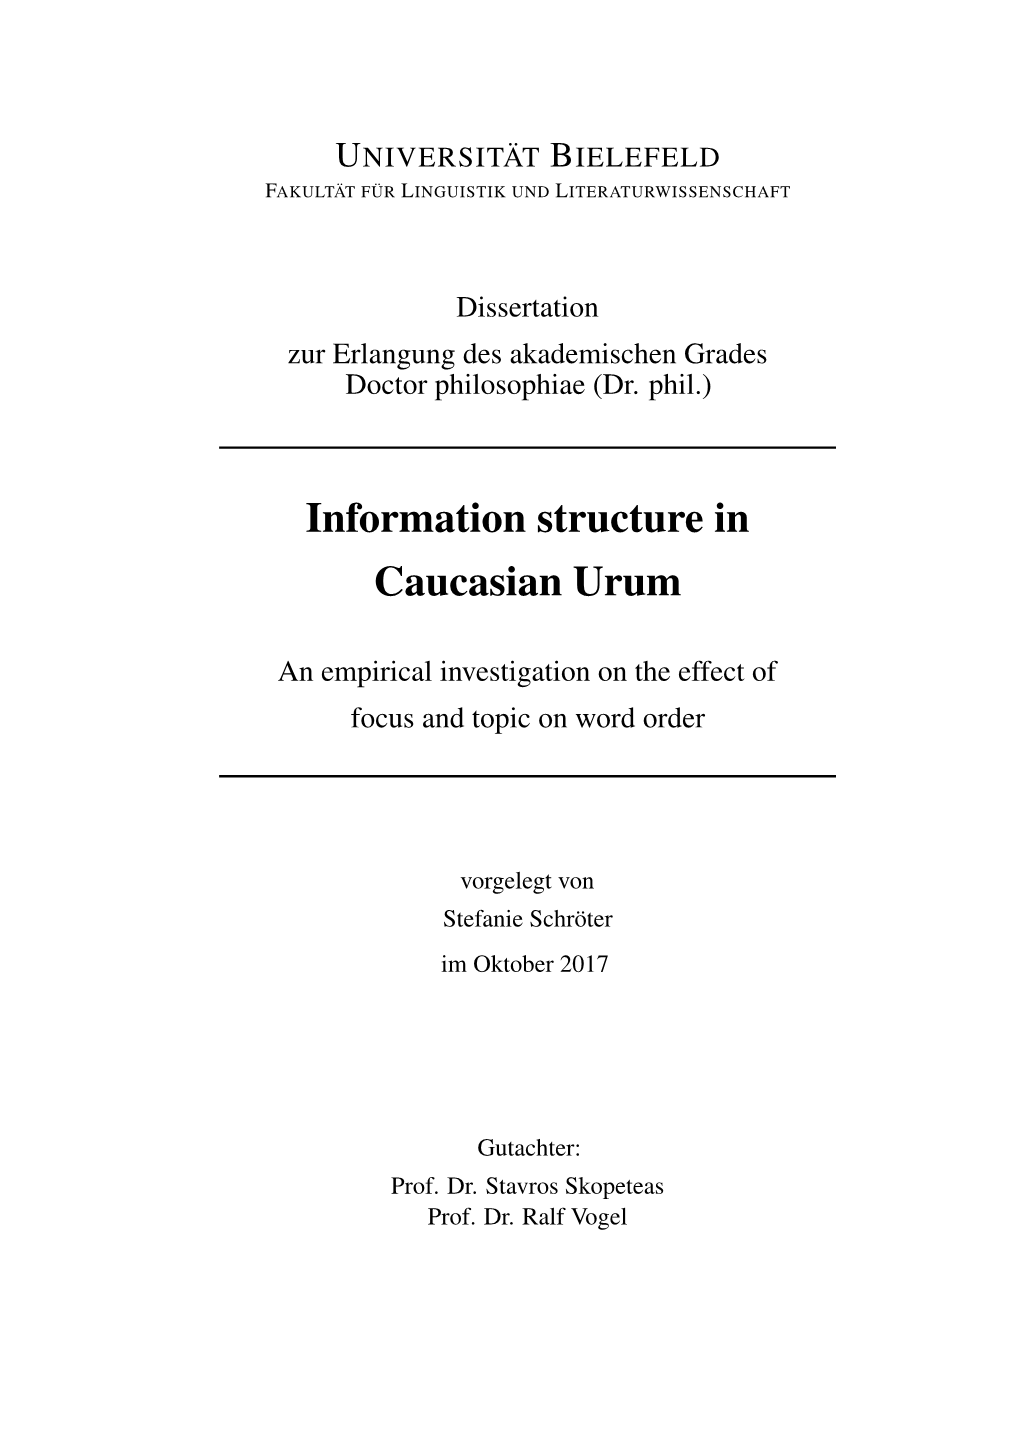 Information Structure in Caucasian Urum